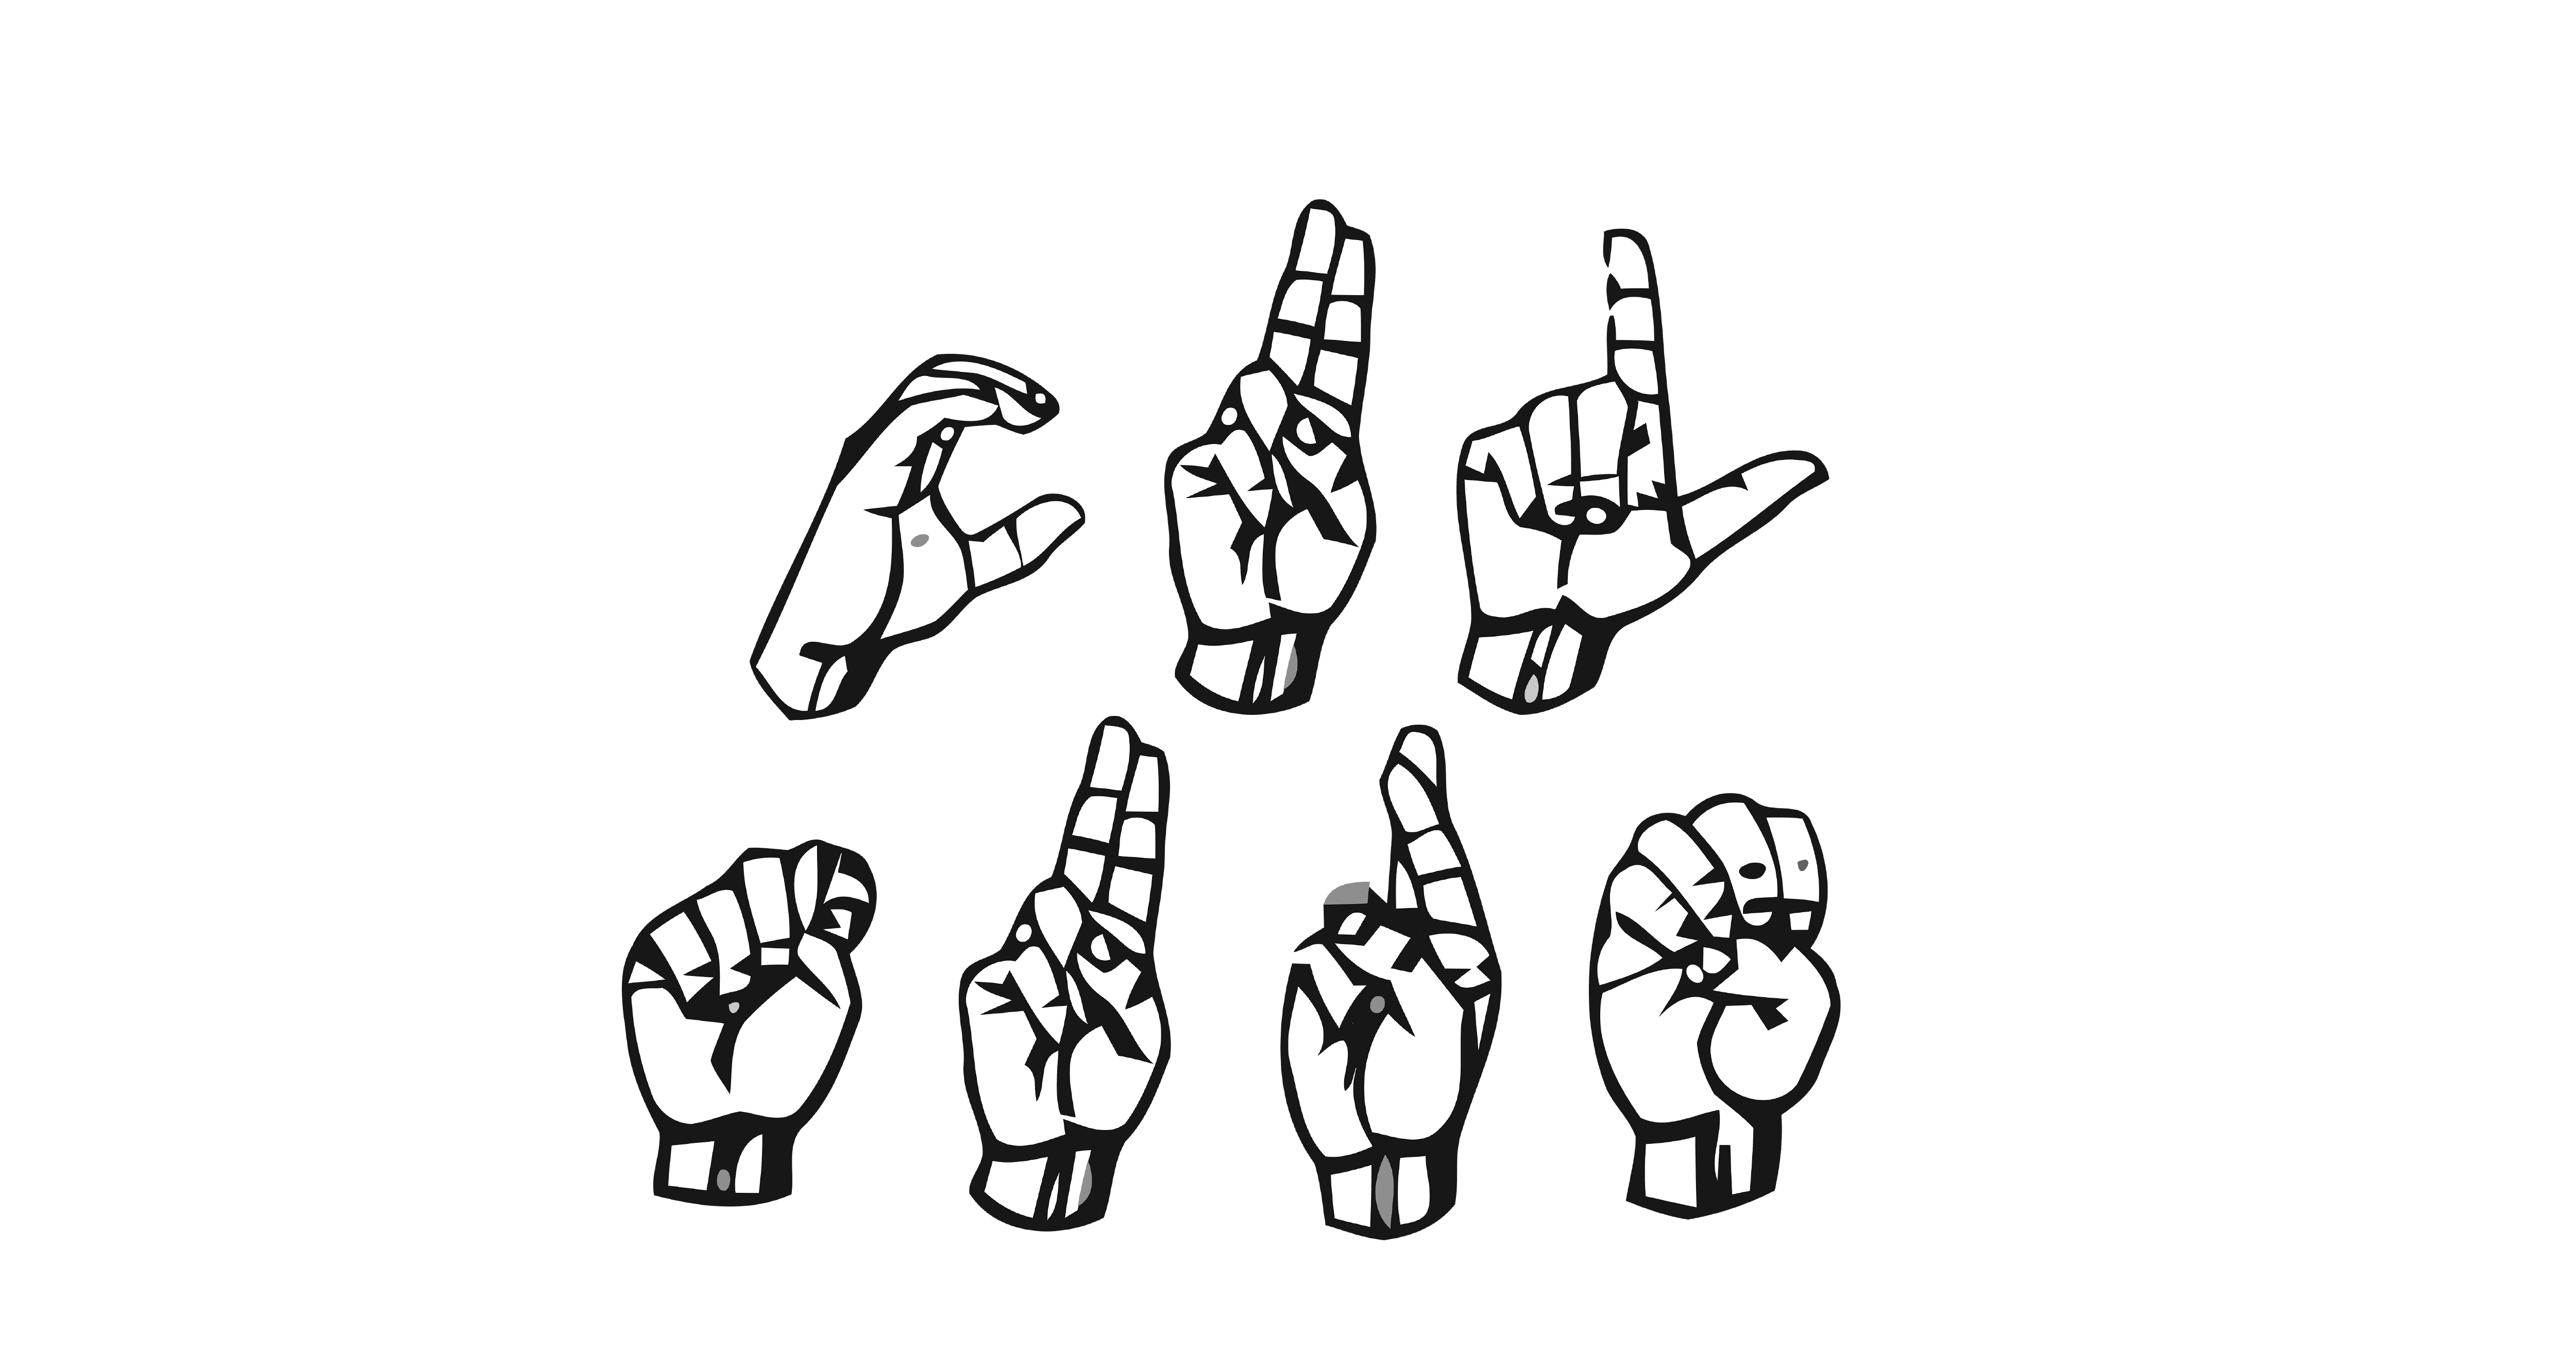 Letras de lenguaje de señas que deletrean la palabra cultura